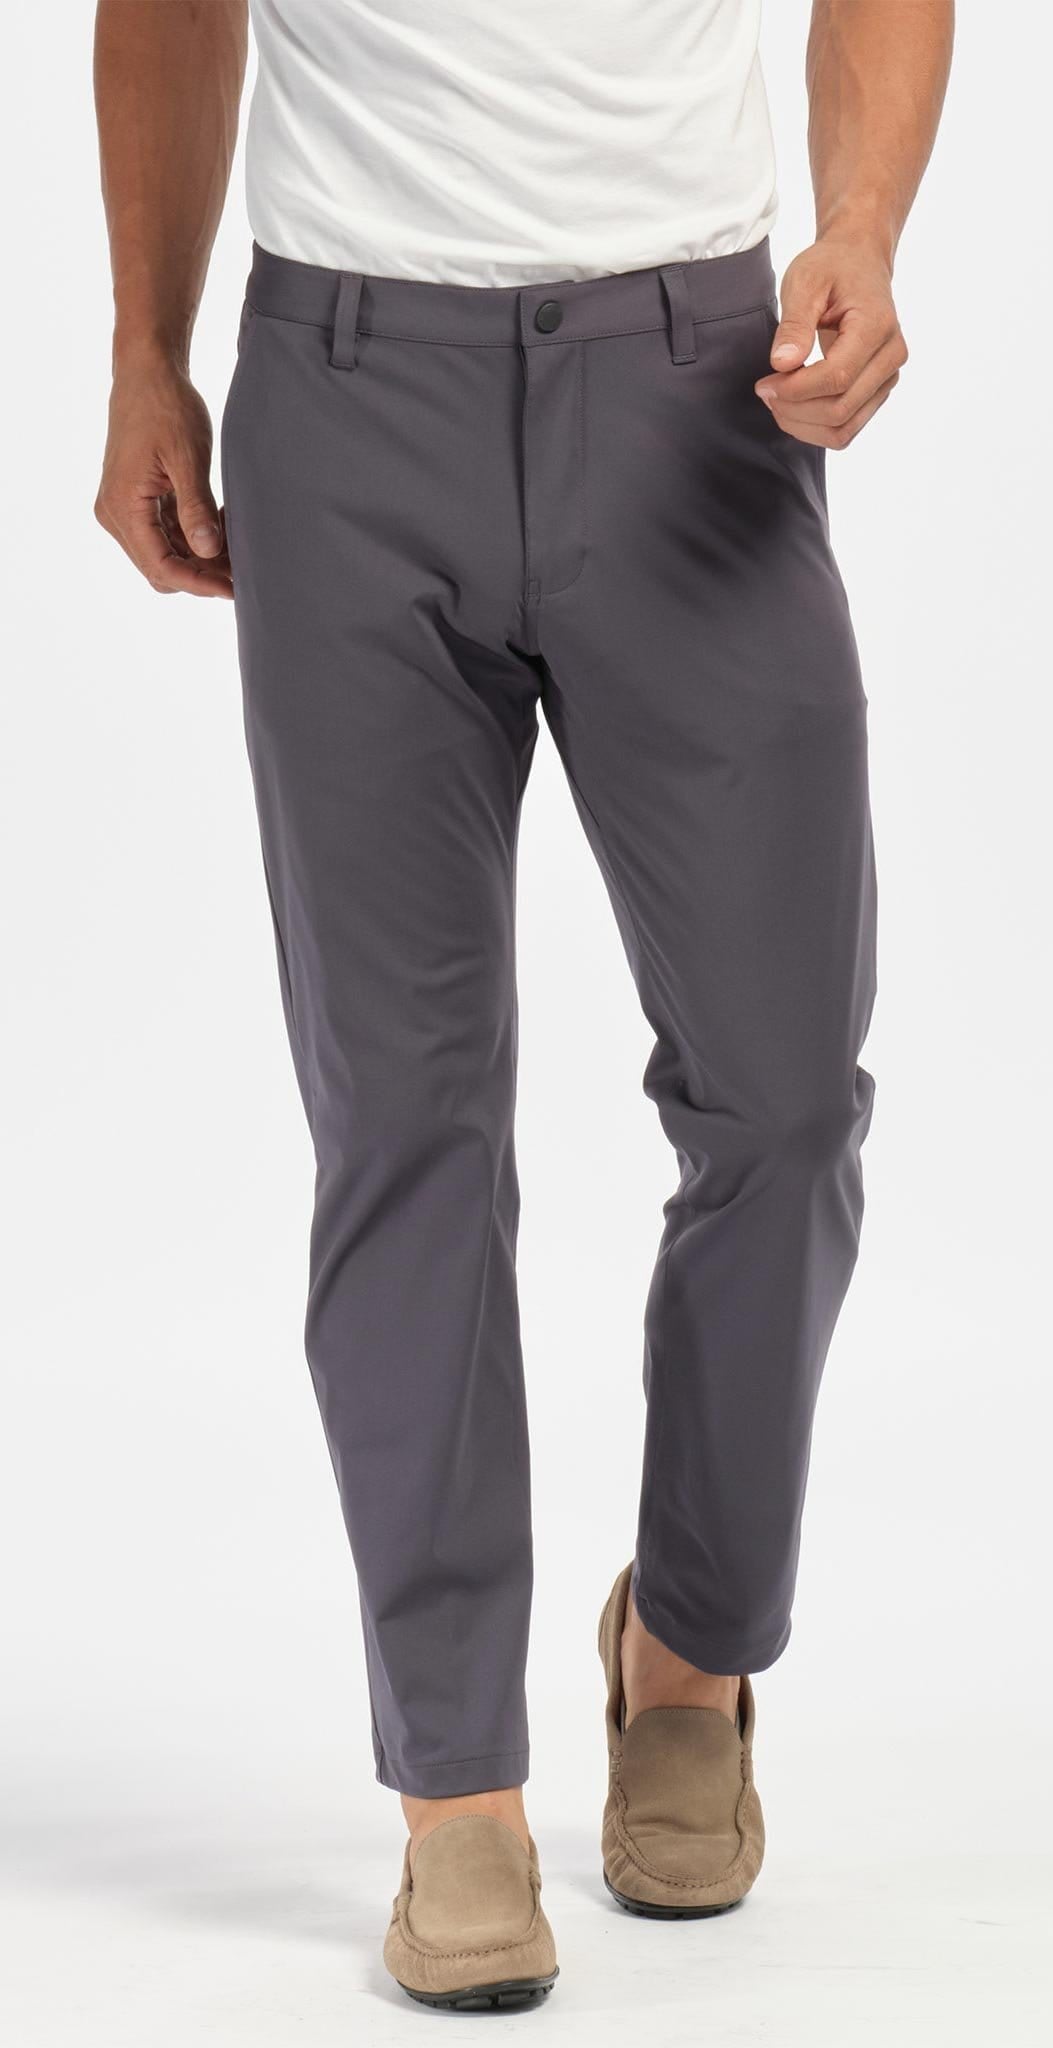 Rhone Commuter Skinny Men's Pants, Ultra Slim-Fit Mens Dress Pants